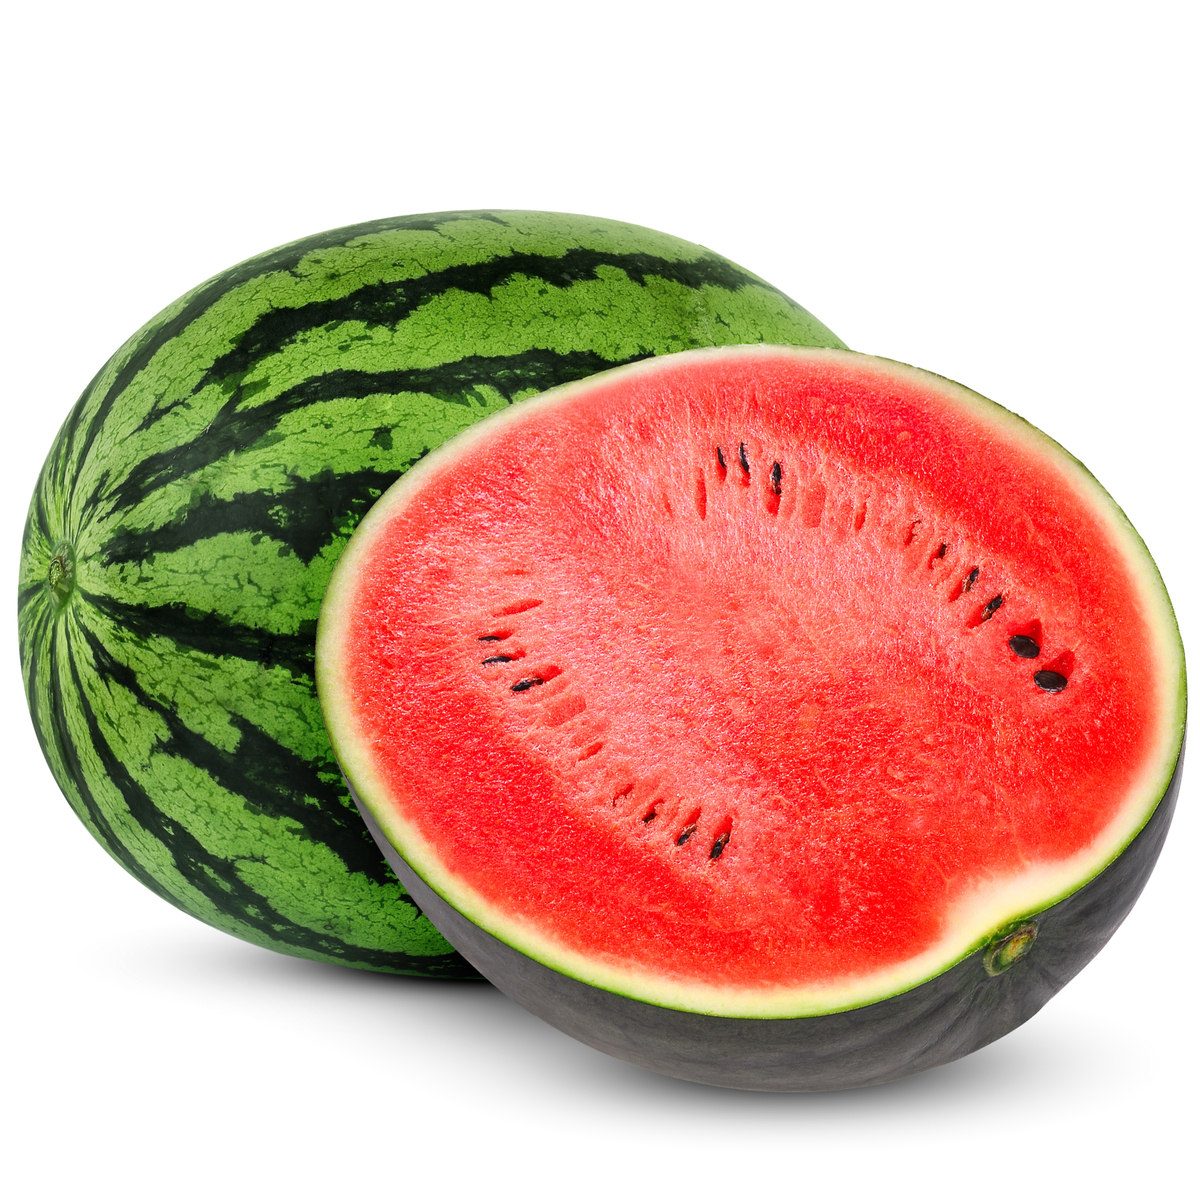 Buy Watermelon 3 kg Online at Best Price | Melons | Lulu KSA in Saudi Arabia